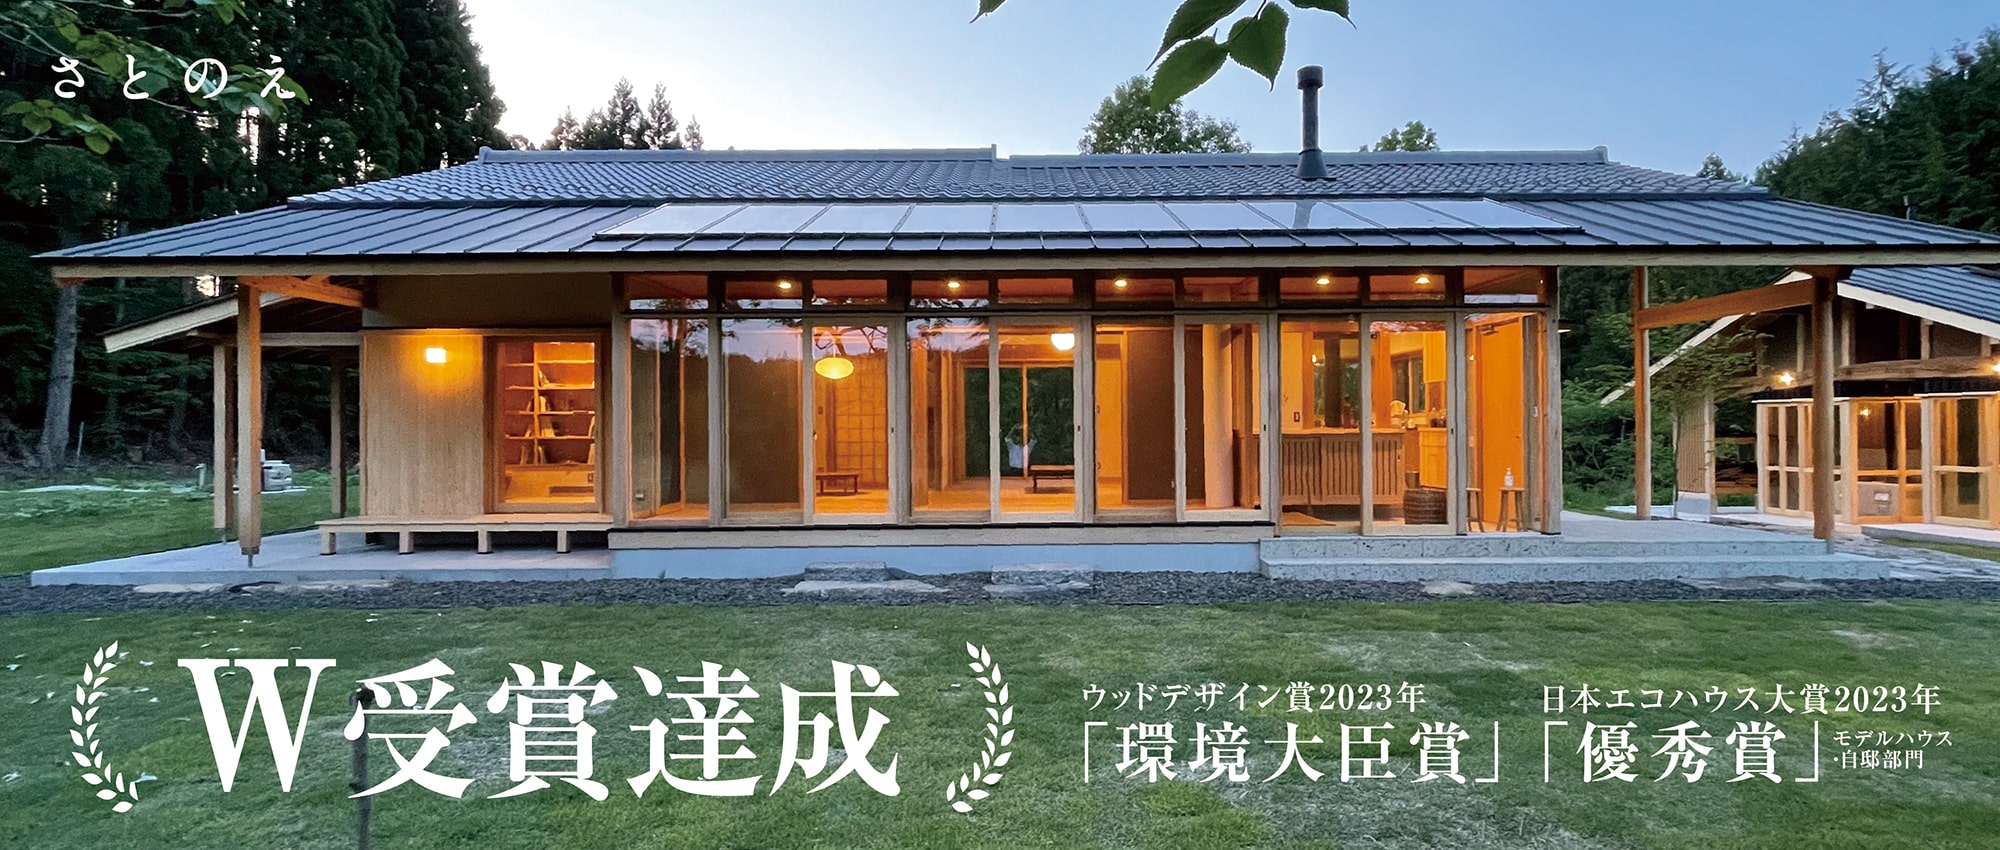 ウッドデザイン賞2023年「環境大臣賞」 日本エコハウス大賞2023年「優秀賞」 W受賞達成